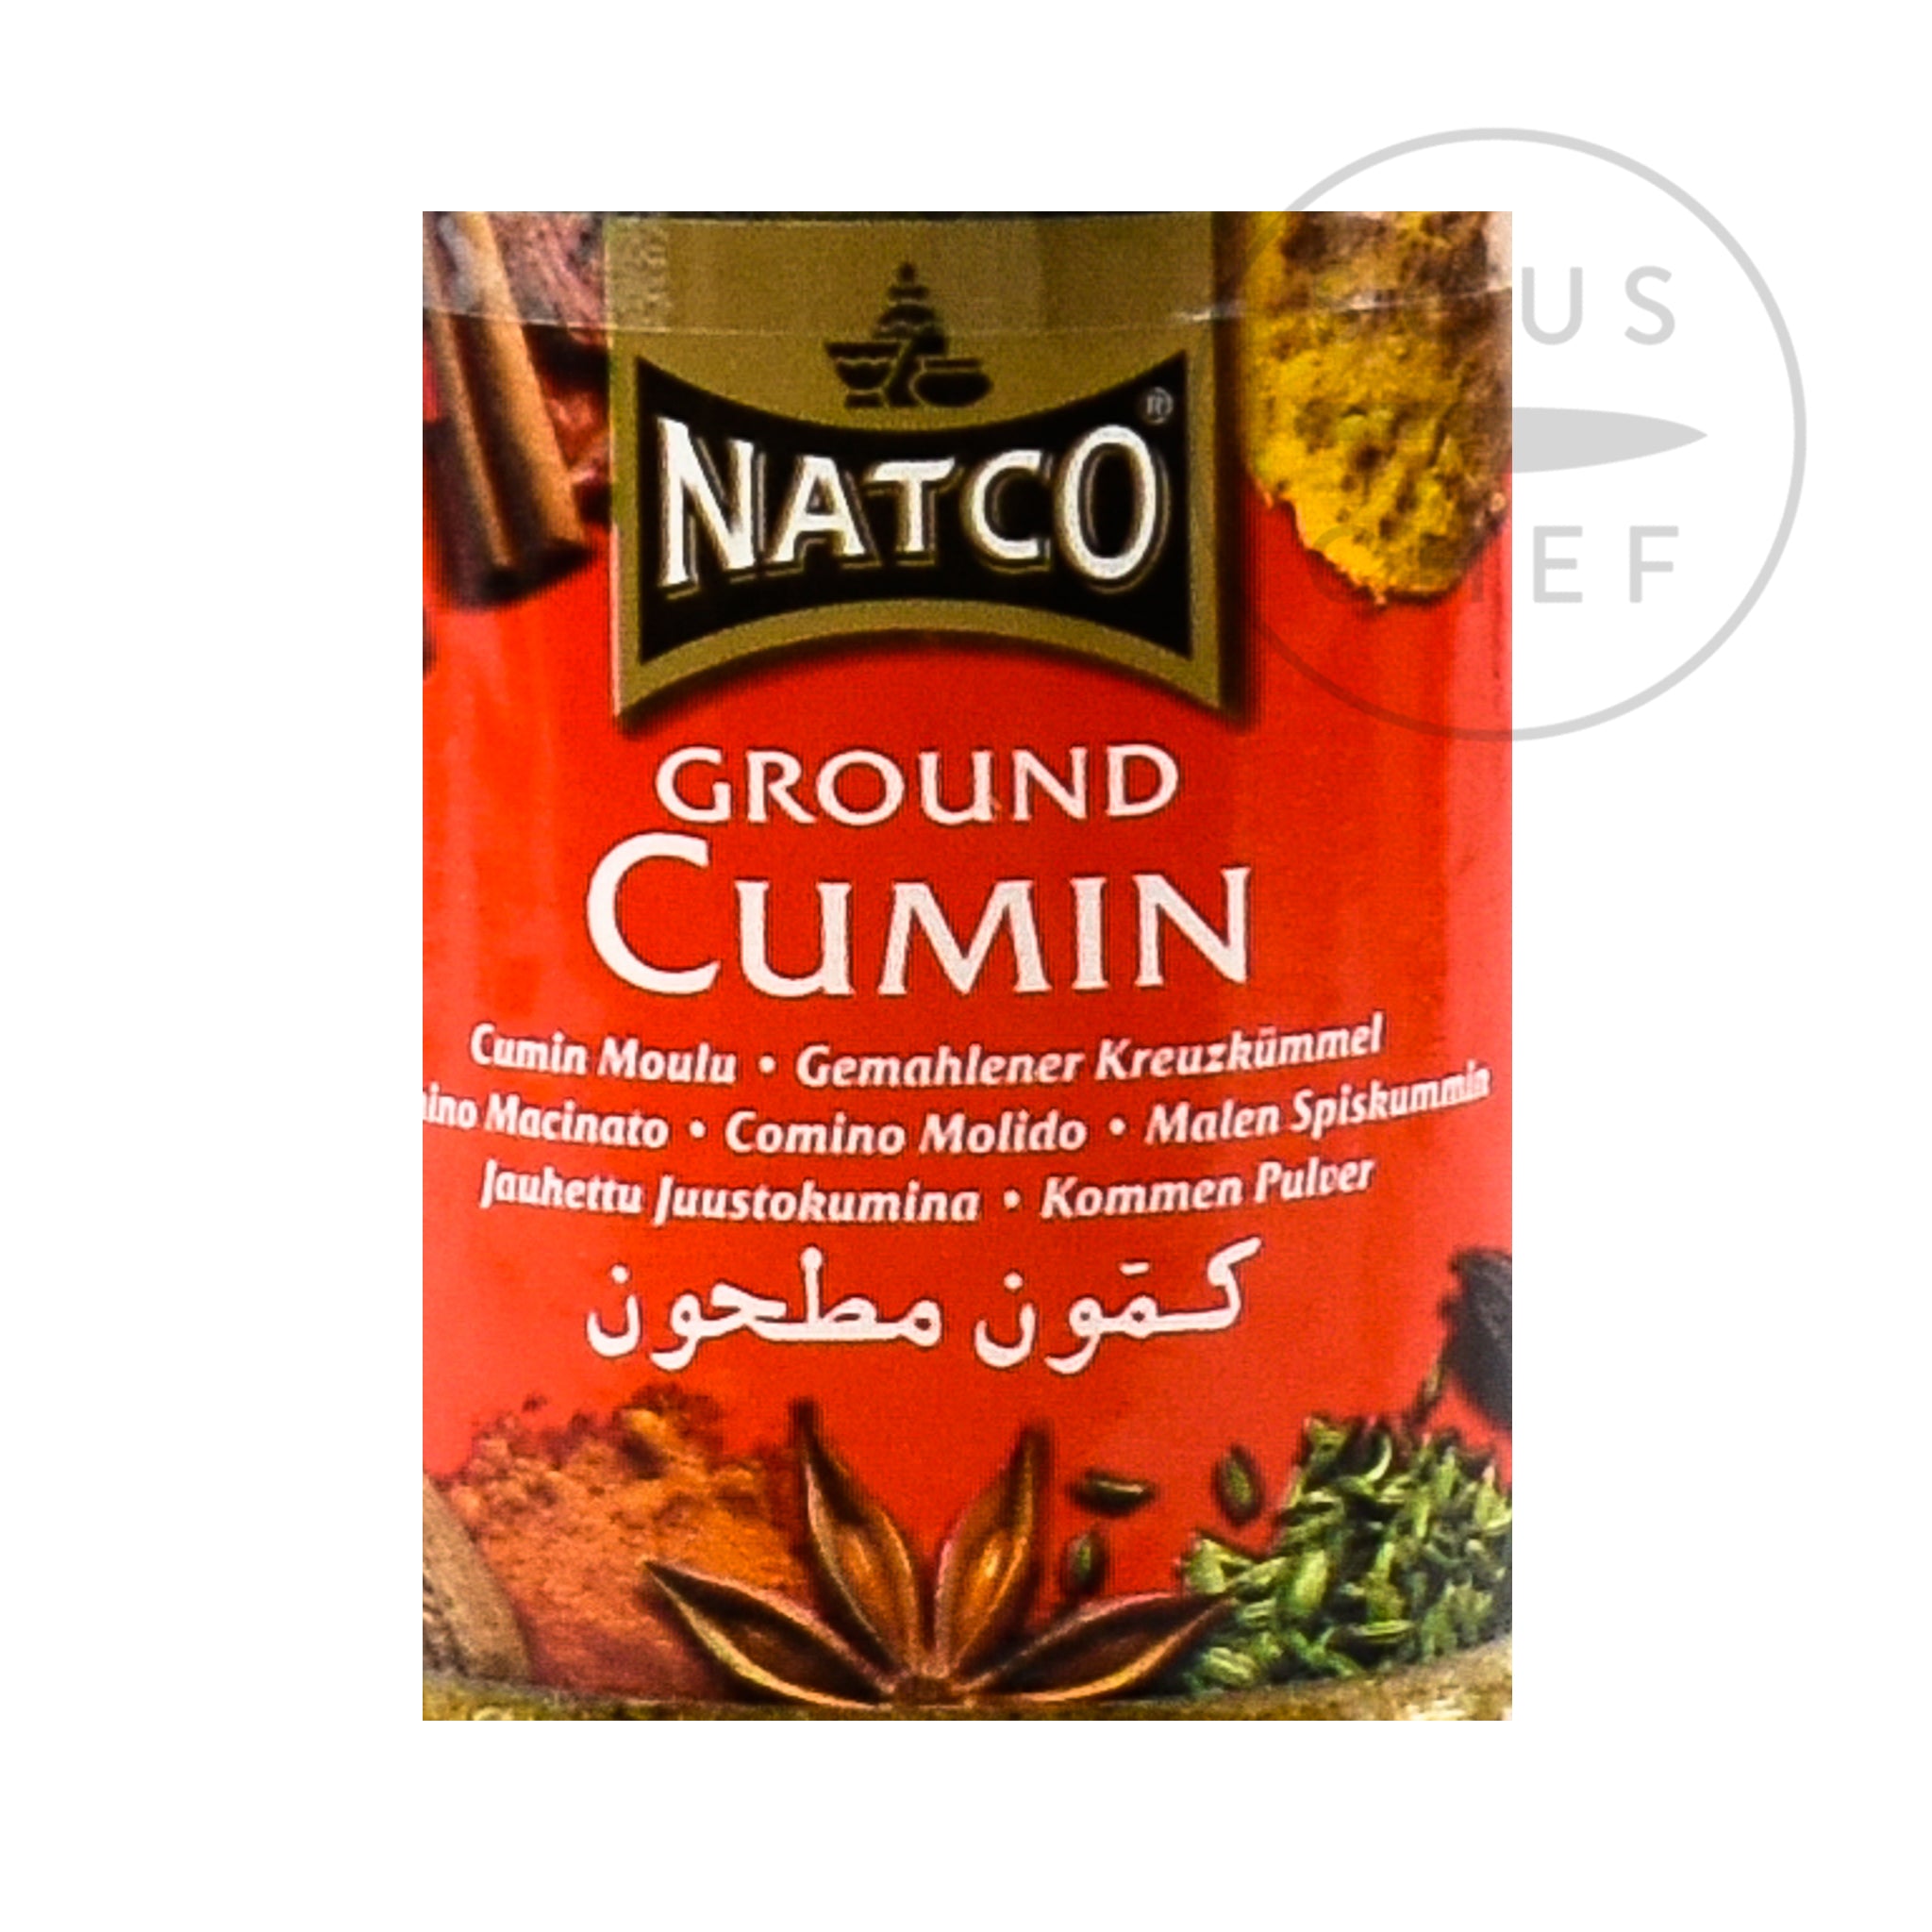 Natco Ground Cumin, 70g